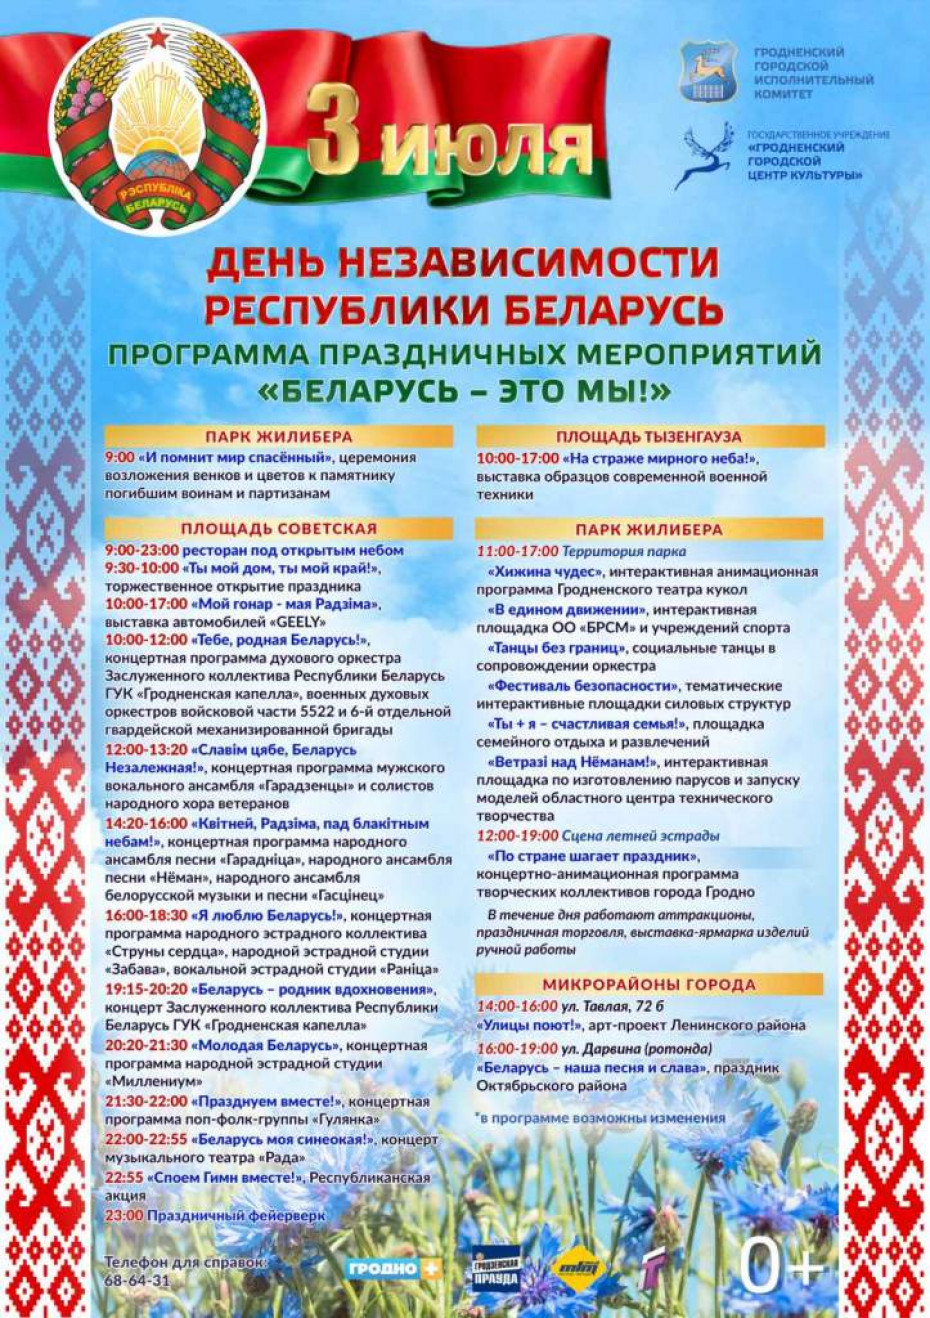 Программа праздничных мероприятий в Гродно «Беларусь-это мы!», посвященных Дню Независимости Республики Беларусь